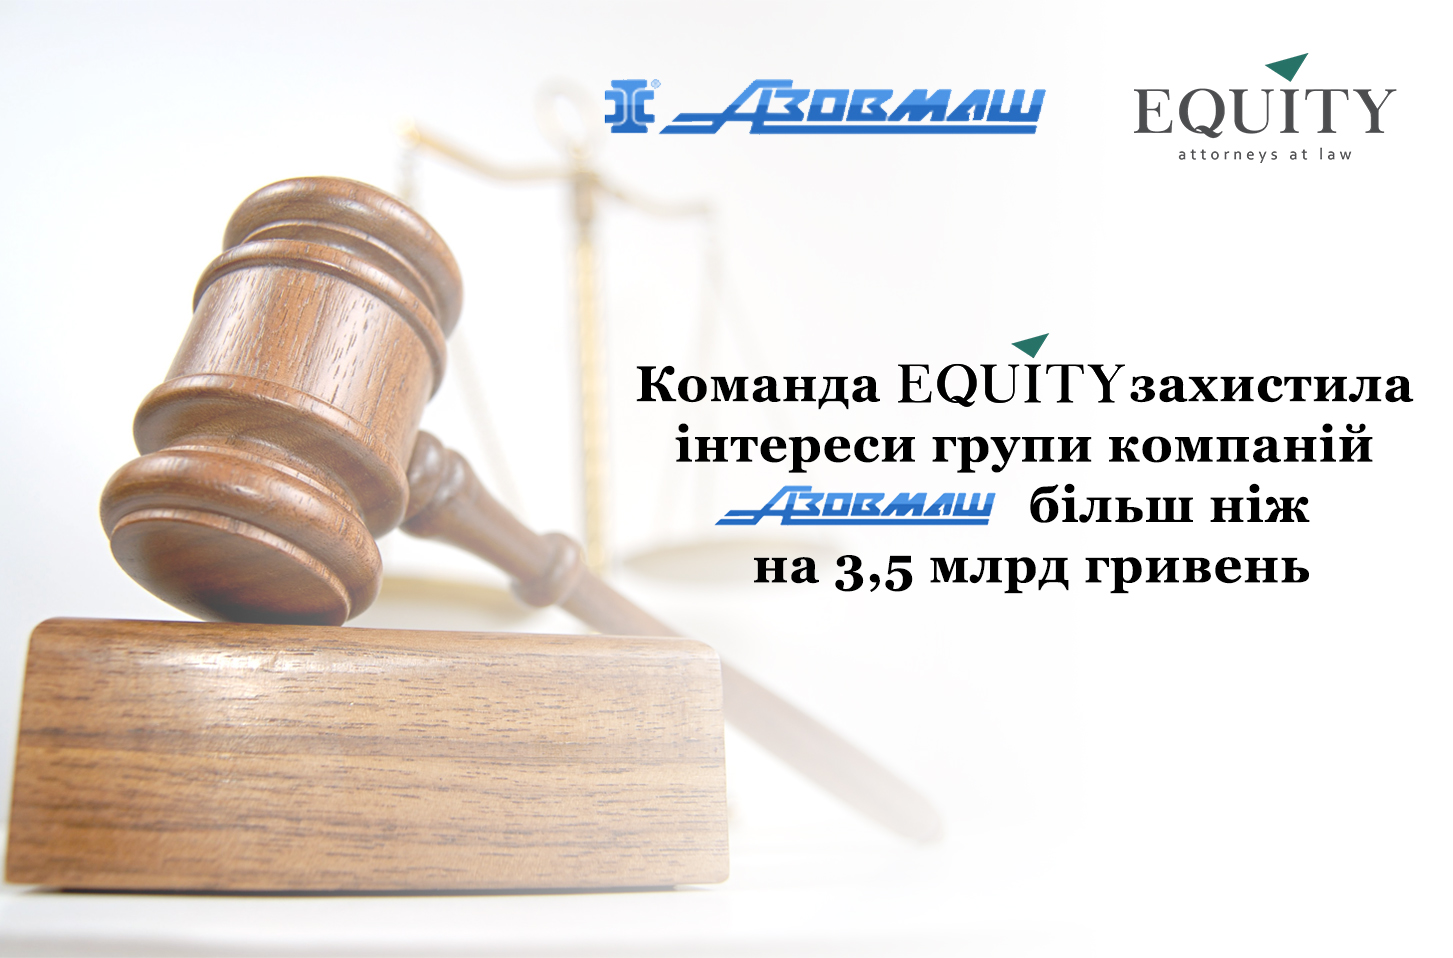 Команда <span class="equity">EQUITY</span> продовжує успішно захищати інтереси групи компаній Азовмаш